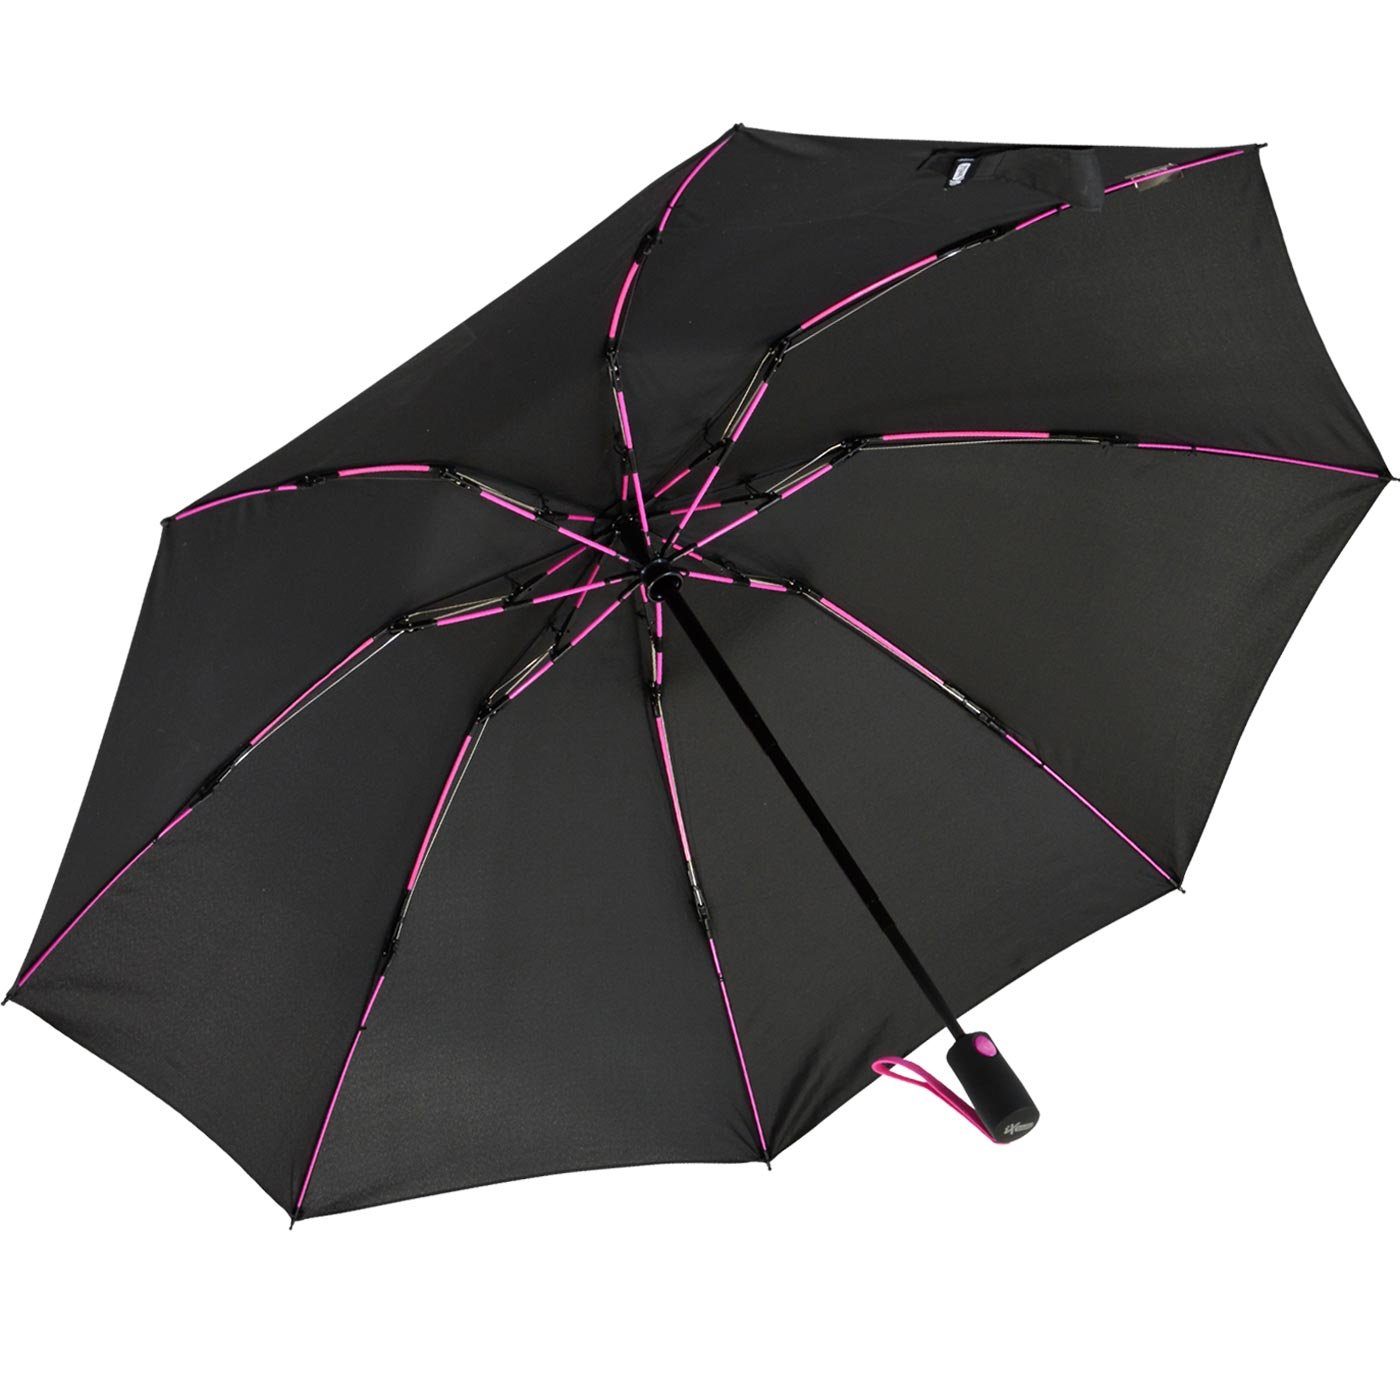 iX-brella Taschenregenschirm Reverse mit Fiberglas-Automatiksch, Speichen bunten stabilen öffnender schwarz-pink umgekehrt